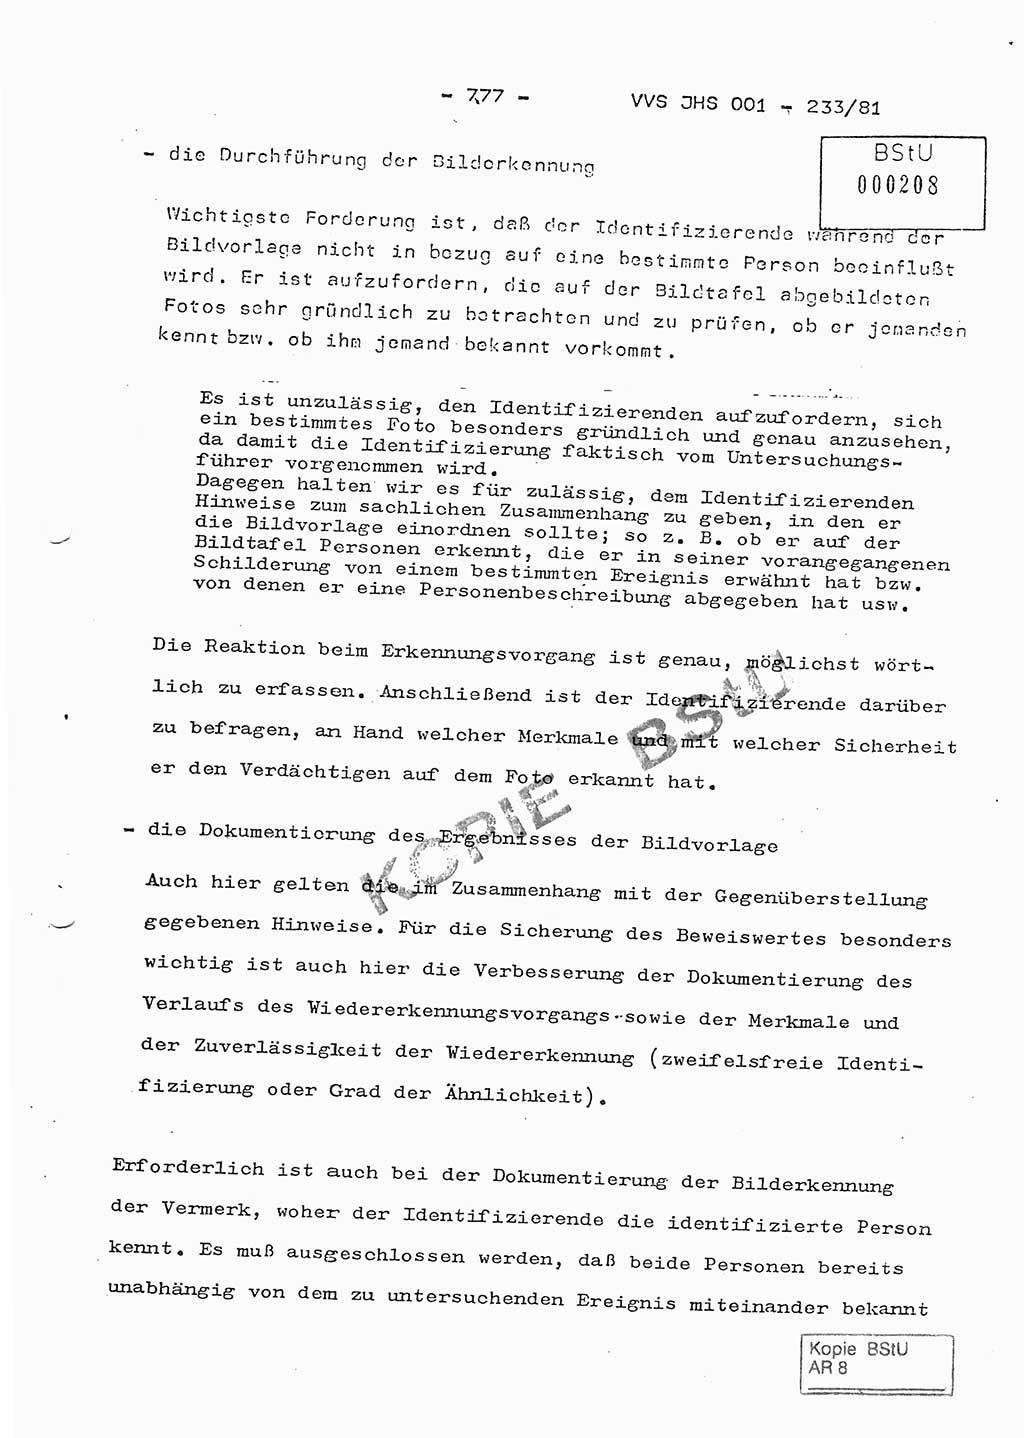 Dissertation Oberstleutnant Horst Zank (JHS), Oberstleutnant Dr. Karl-Heinz Knoblauch (JHS), Oberstleutnant Gustav-Adolf Kowalewski (HA Ⅸ), Oberstleutnant Wolfgang Plötner (HA Ⅸ), Ministerium für Staatssicherheit (MfS) [Deutsche Demokratische Republik (DDR)], Juristische Hochschule (JHS), Vertrauliche Verschlußsache (VVS) o001-233/81, Potsdam 1981, Blatt 777 (Diss. MfS DDR JHS VVS o001-233/81 1981, Bl. 777)